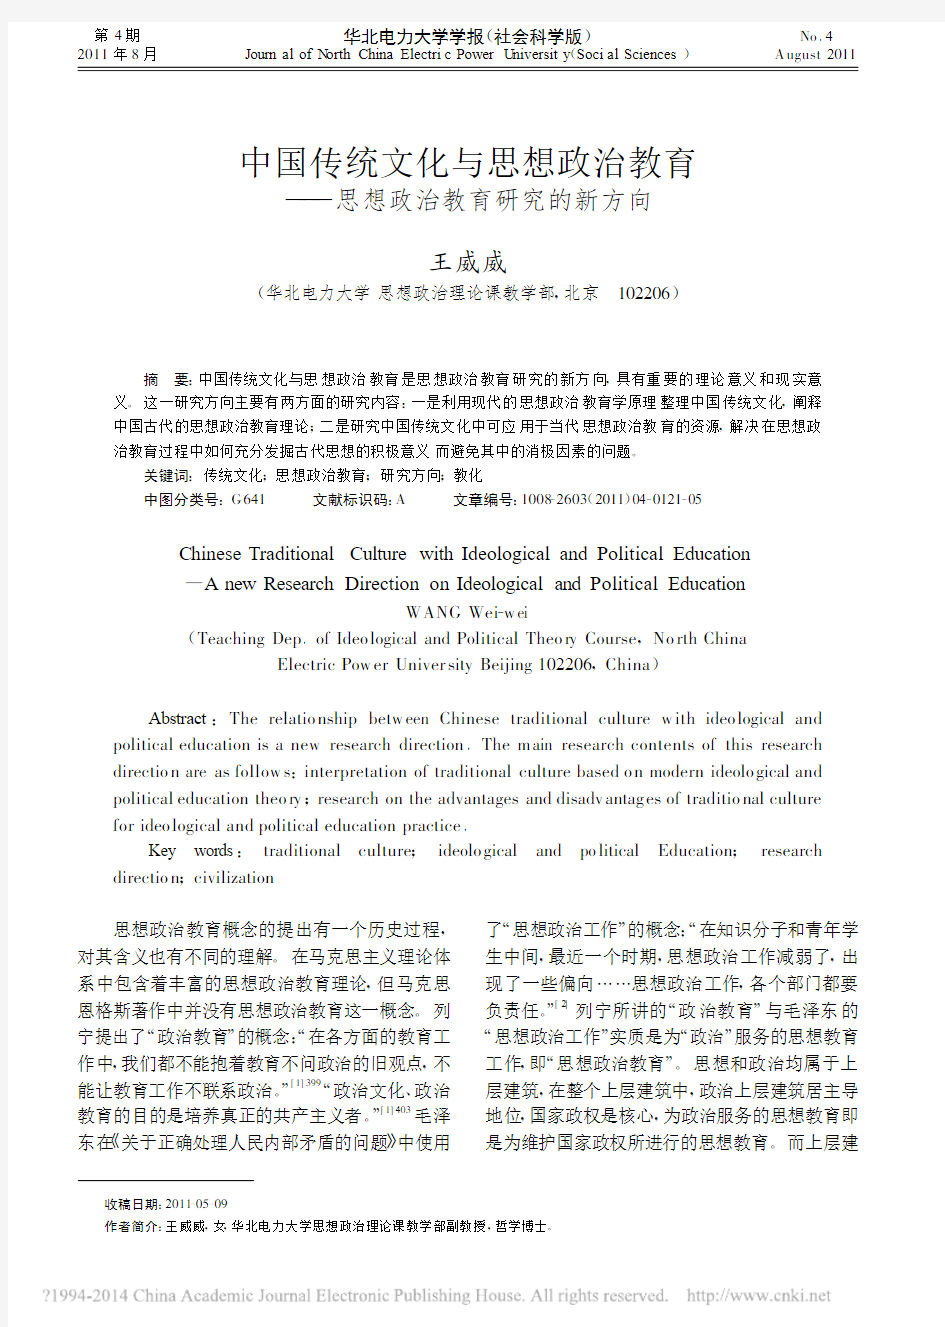 中国传统文化与思想政治教育——思想政治教育研究的新方向